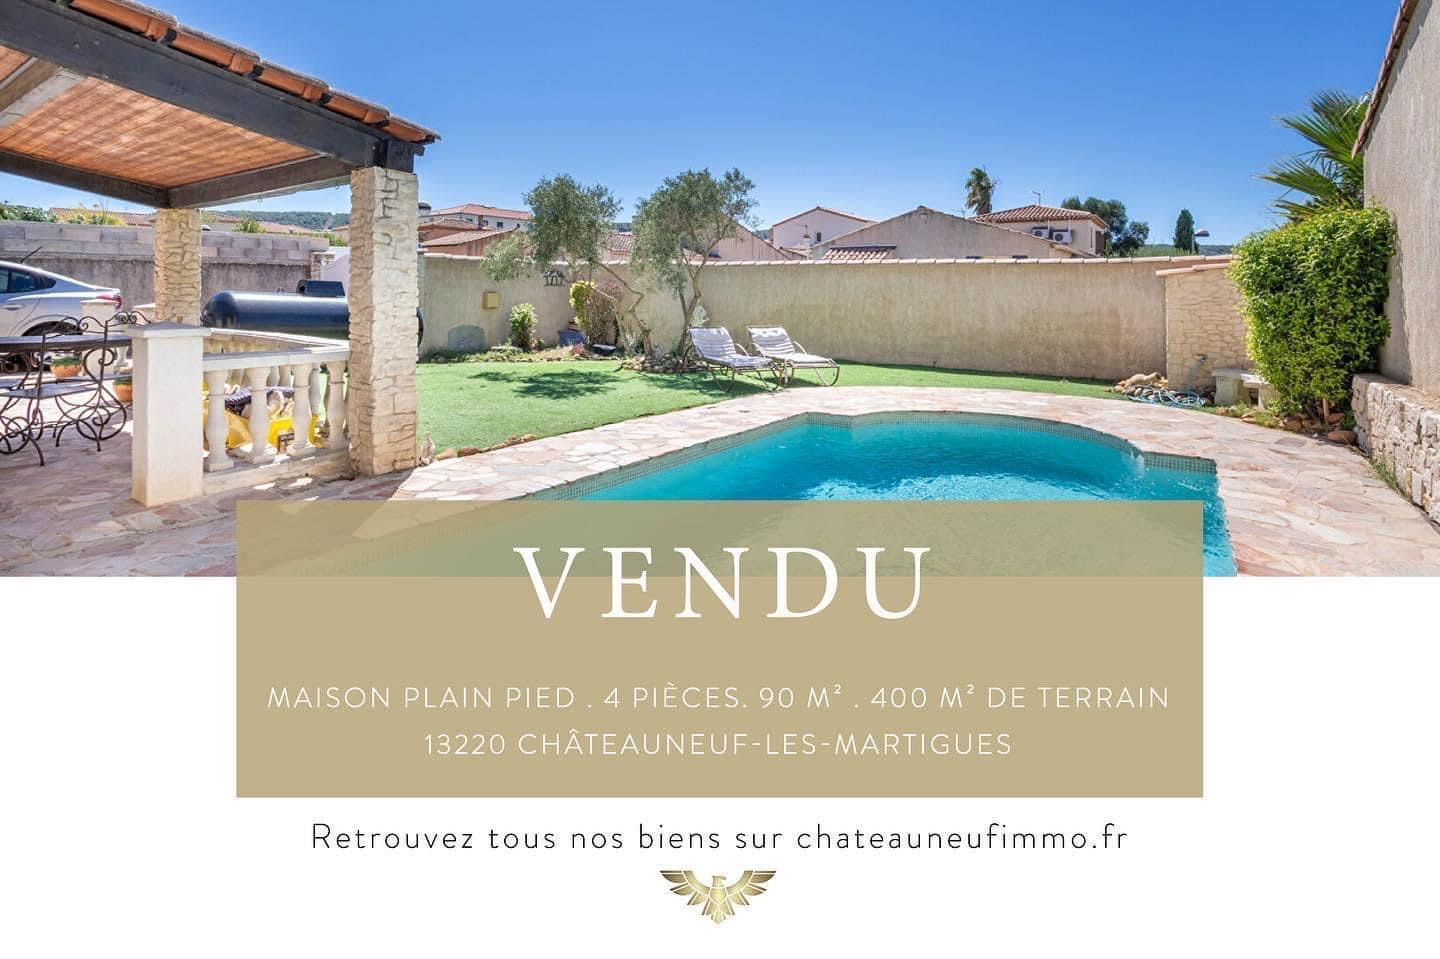 Maison Plain pied  Chateauneuf Les Martigues 4 pièce(s) 90 m2 / 400 m² de terrain  – VENDU